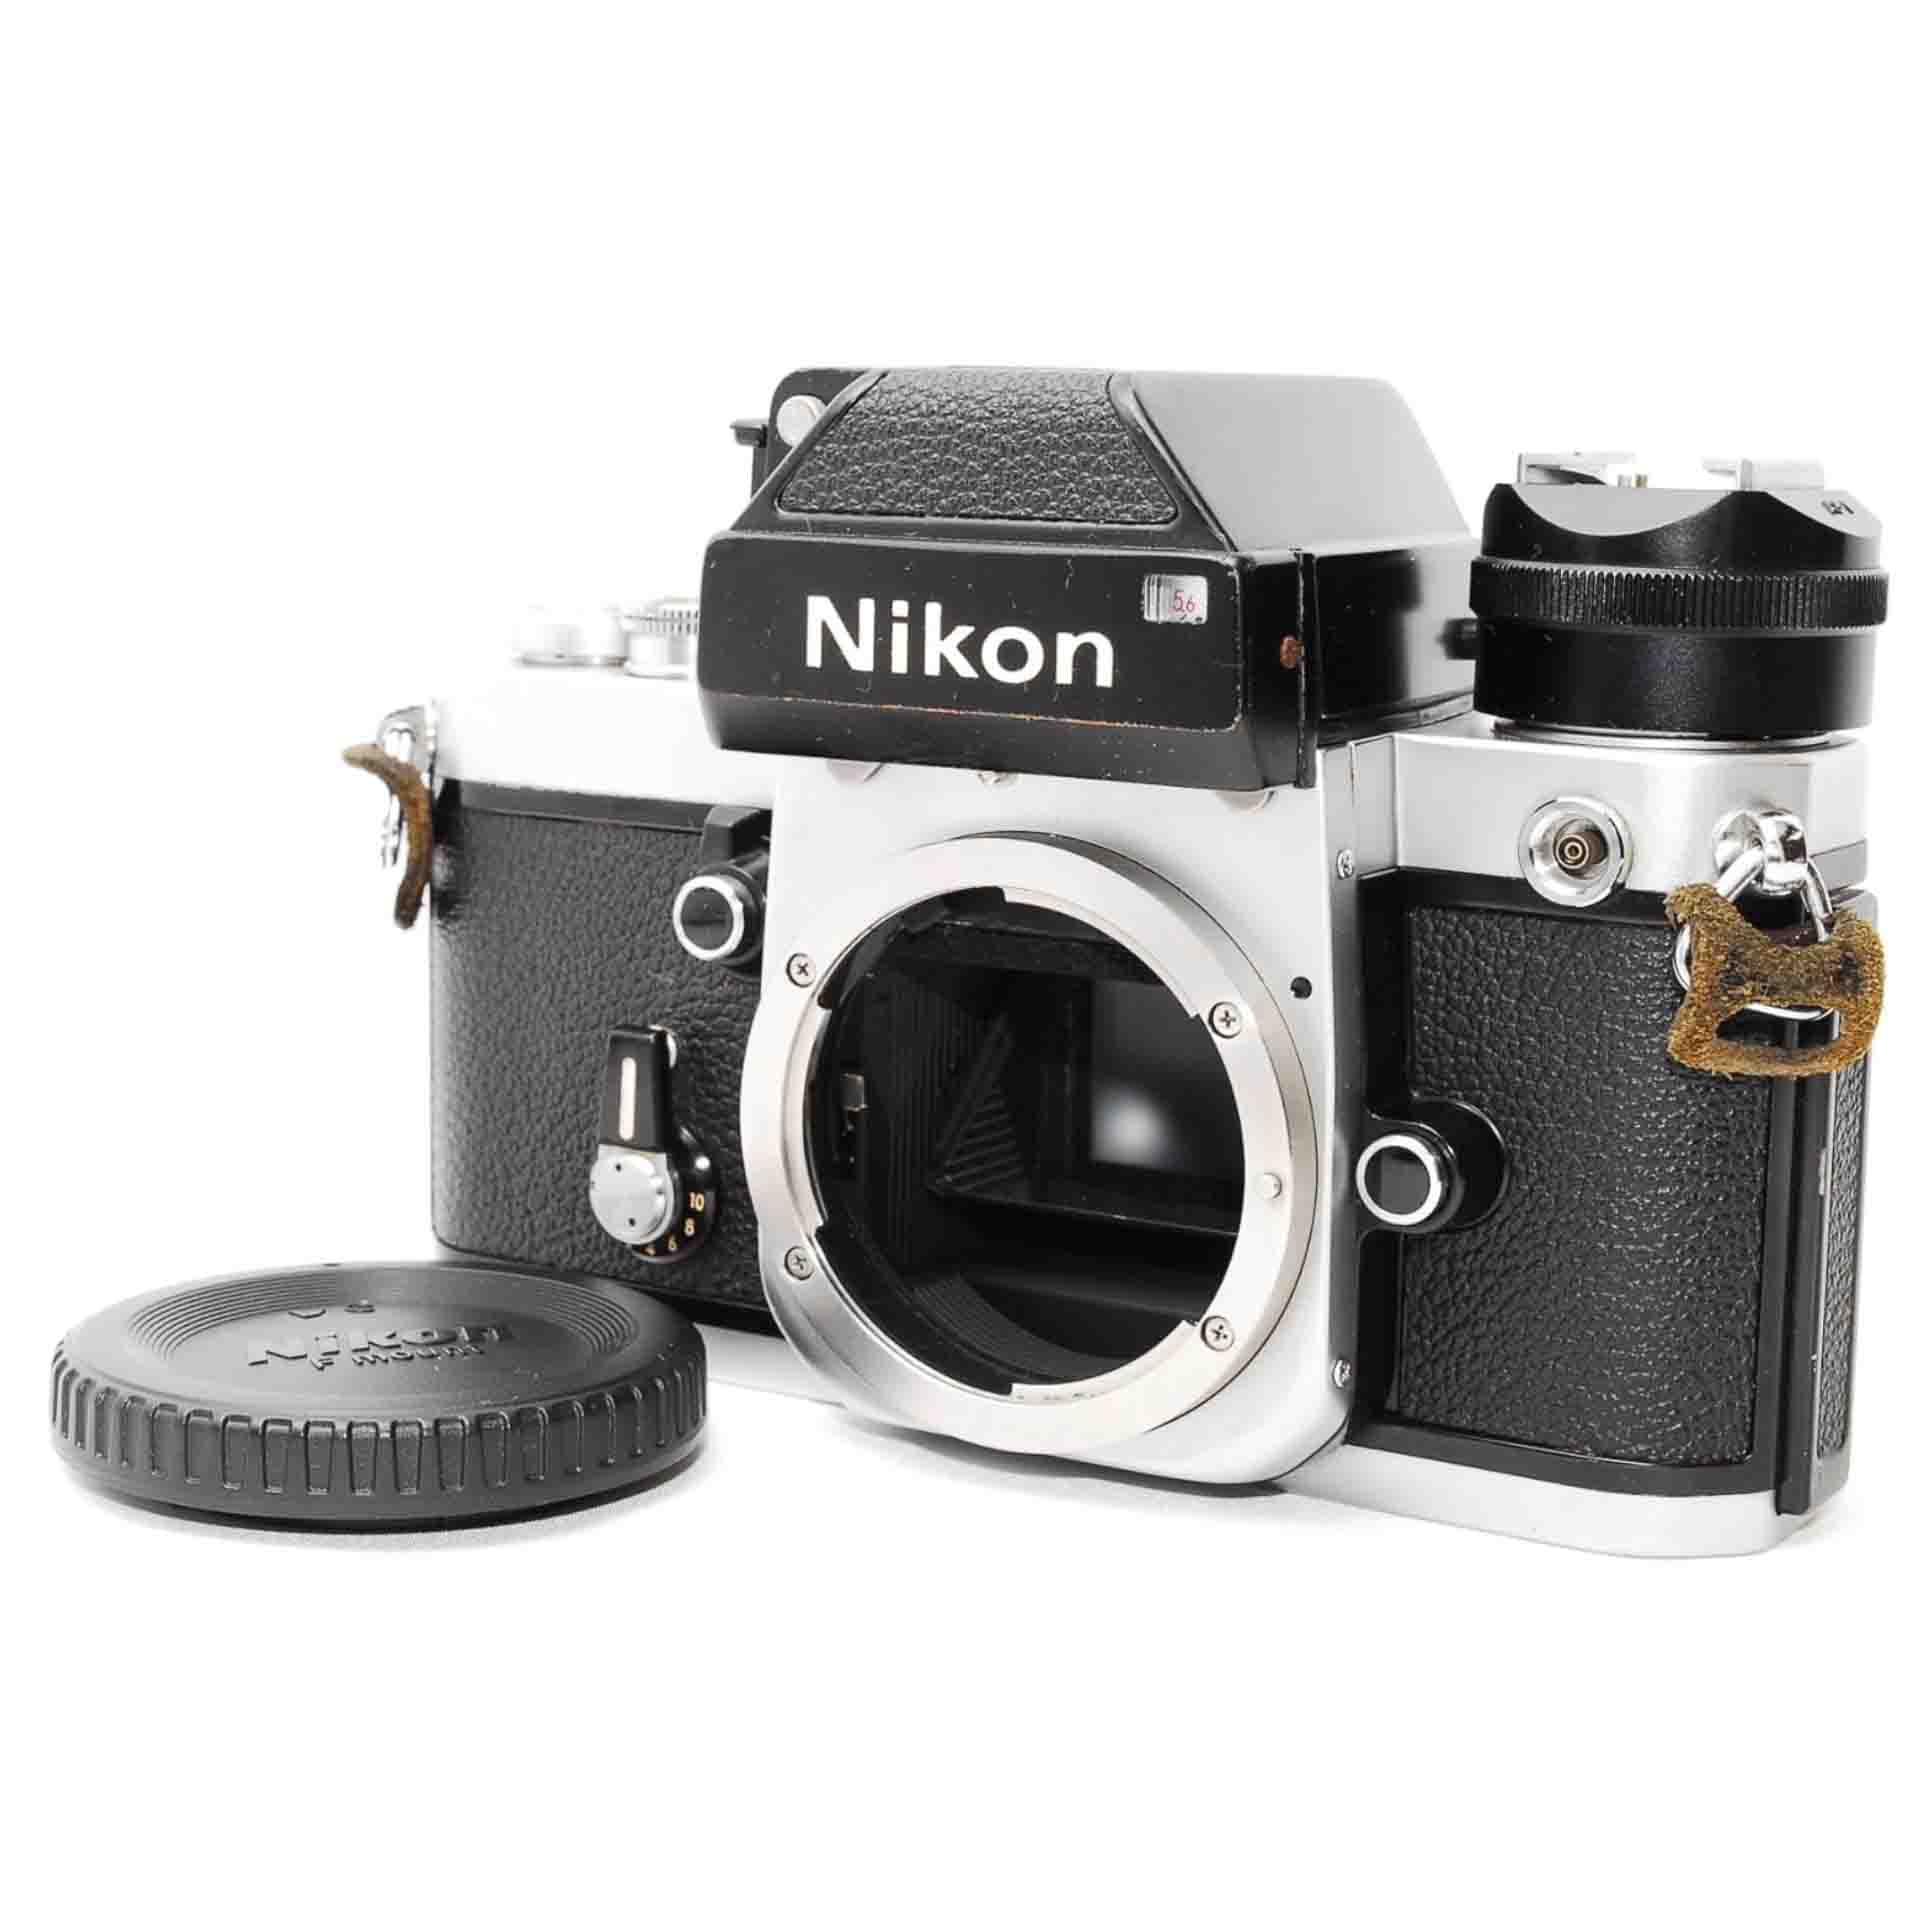 Nikon F2 film camera and lens cover